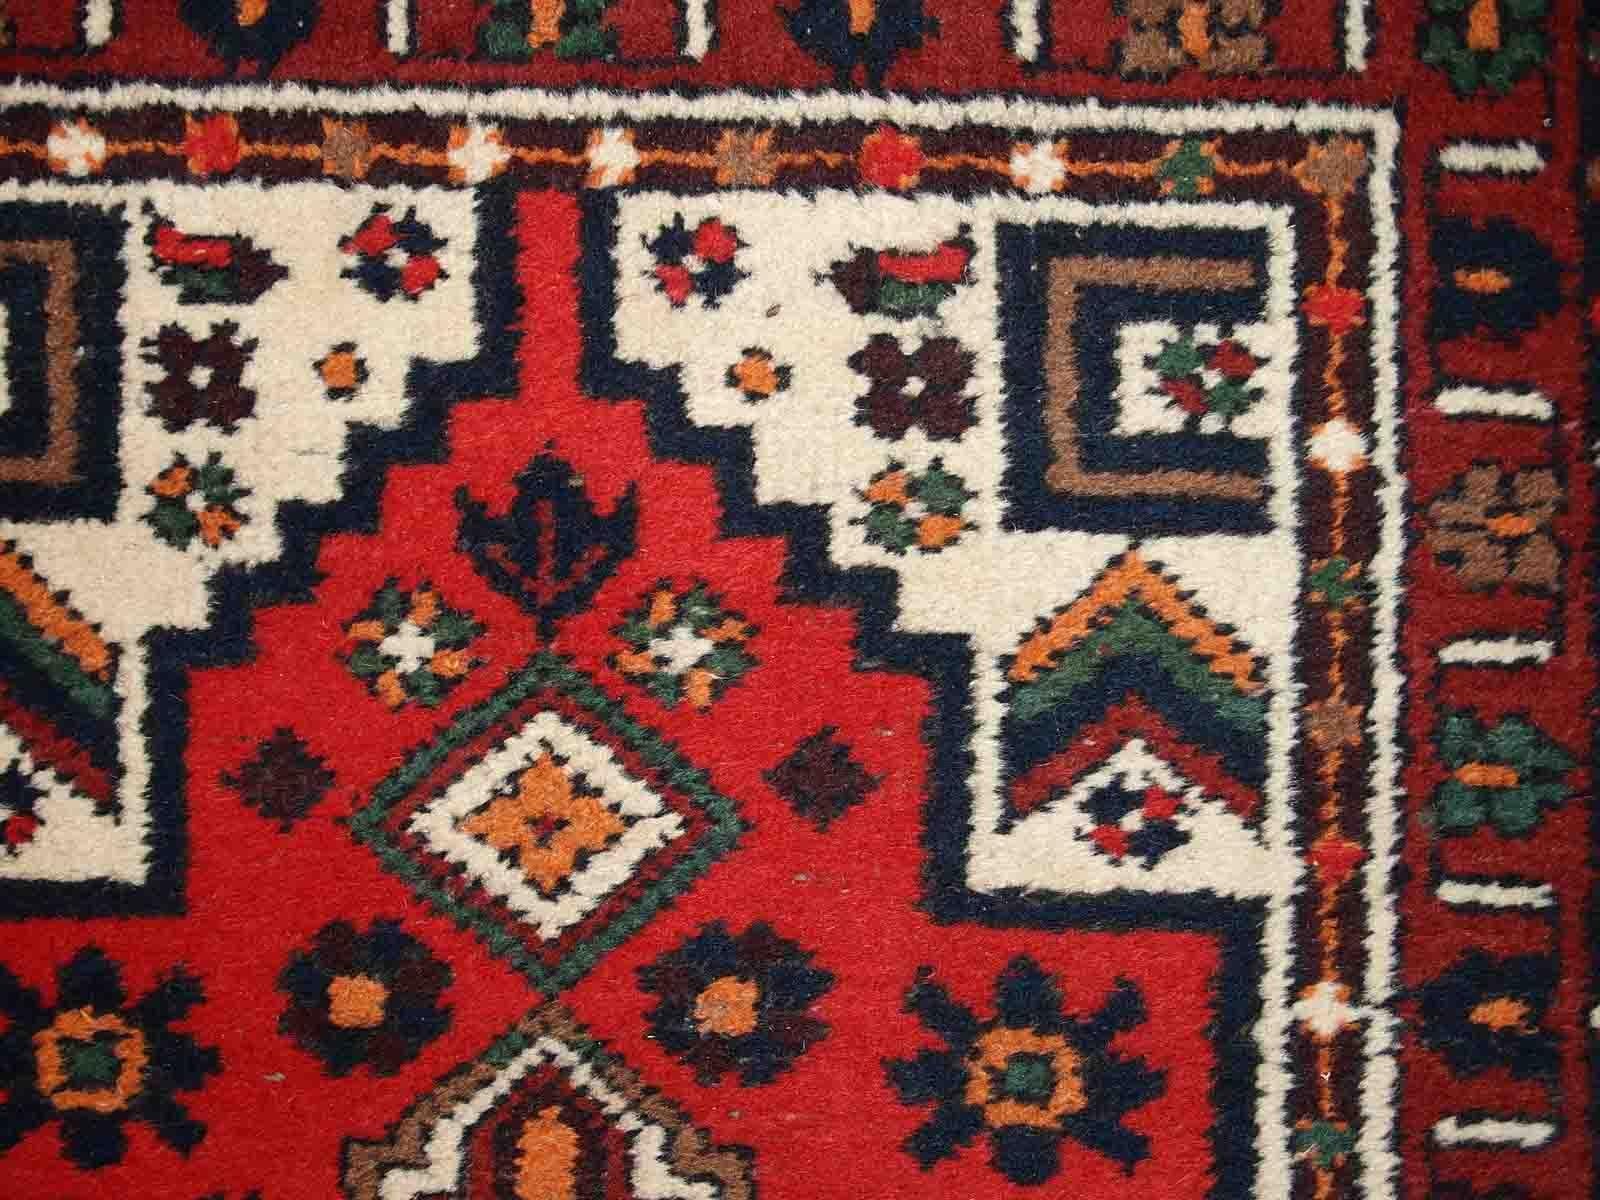 Handgefertigter Vintage-Teppich aus dem Nahen Osten in traditionellem Design. Der Teppich stammt aus dem Ende des 20. Jahrhunderts und ist in gutem Originalzustand. 

-zustand: original gut,

-etwa: 1970er Jahre,

-größe: 2,4' x 4,5' (74cm x